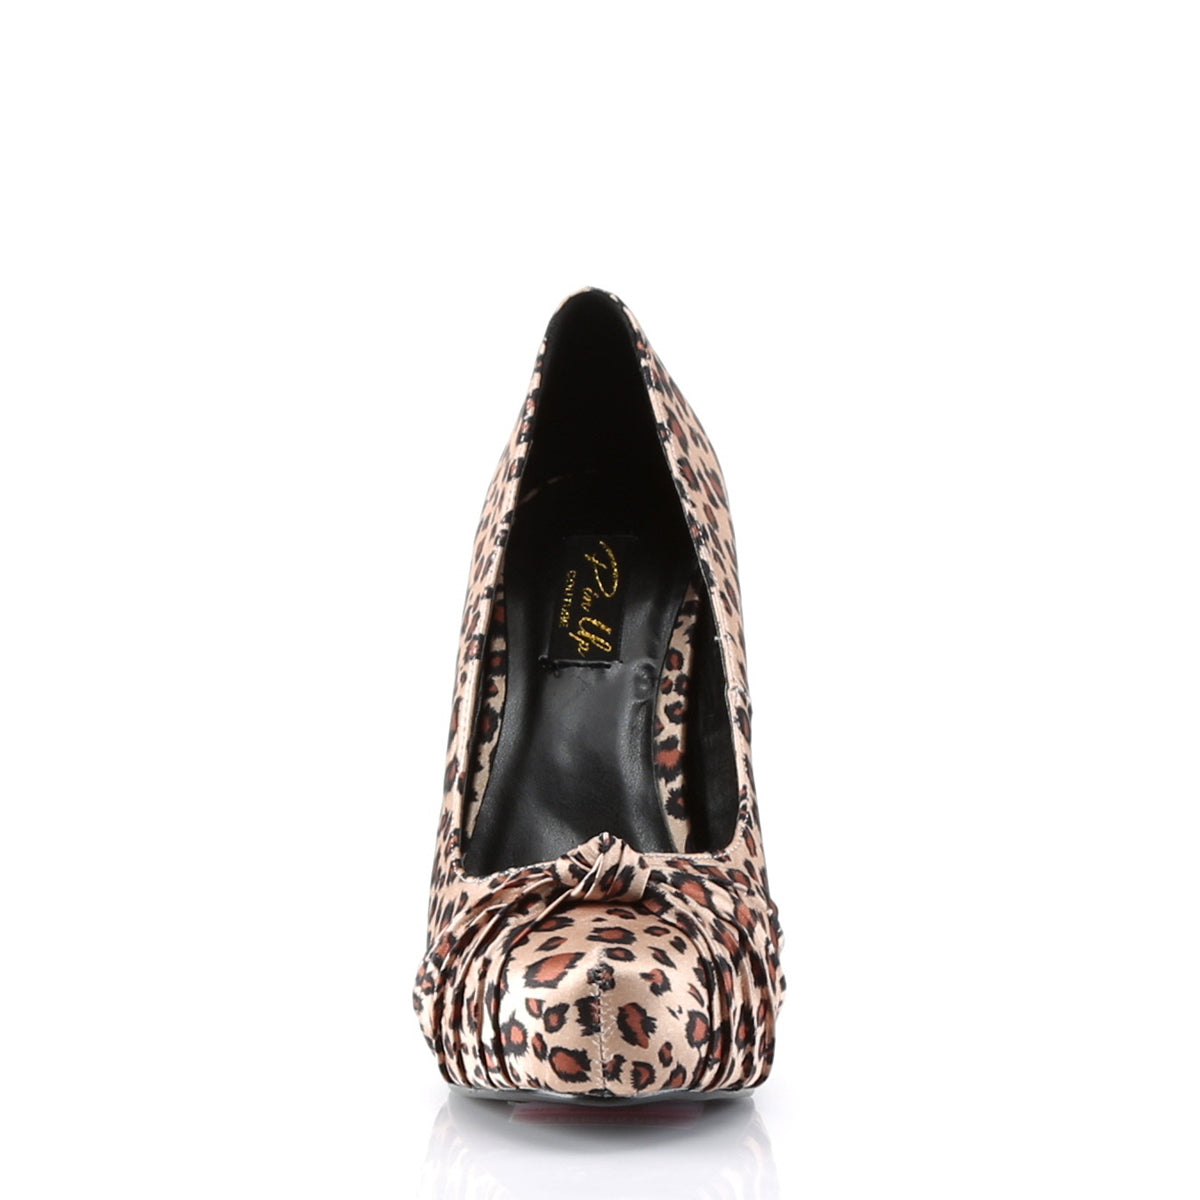 SAFARI-06 Tan Leopard Print Satin Pin Up Couture